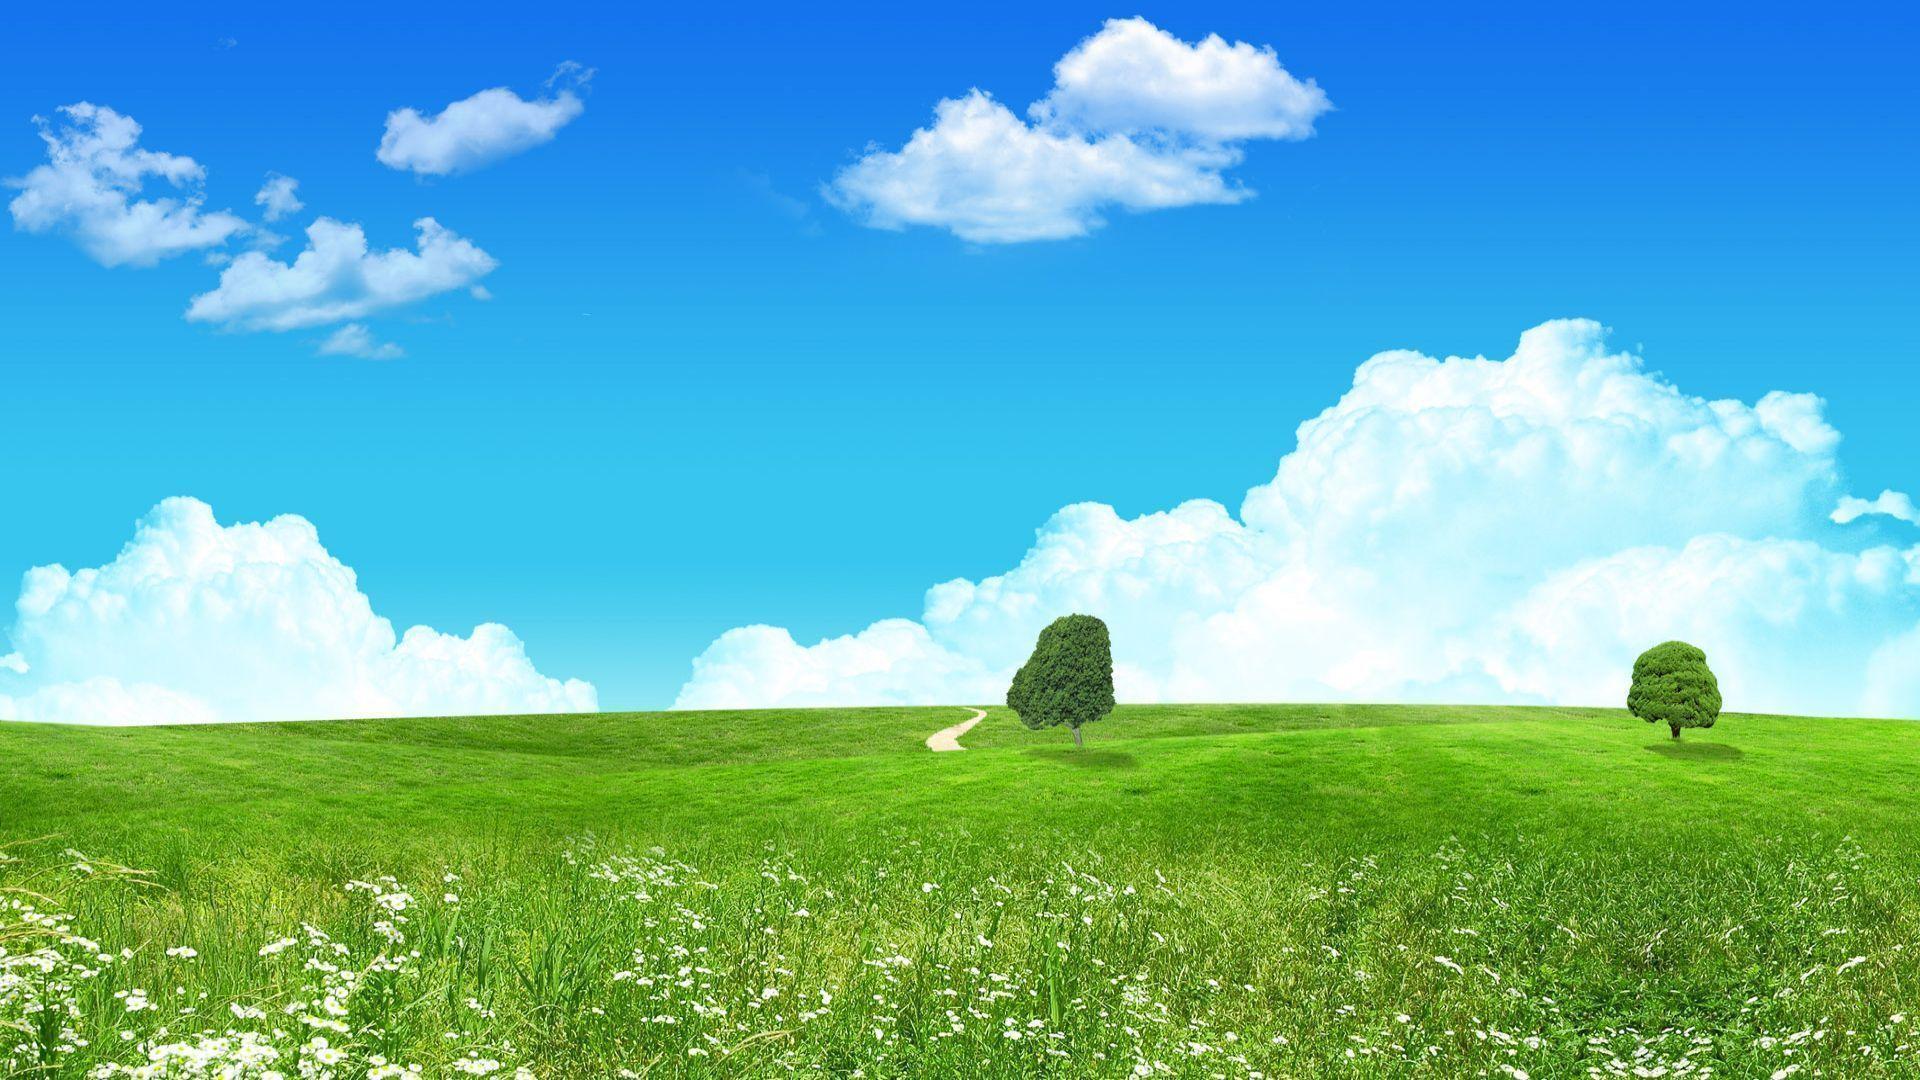 Wallpaper For > Summer Landscape Desktop Background